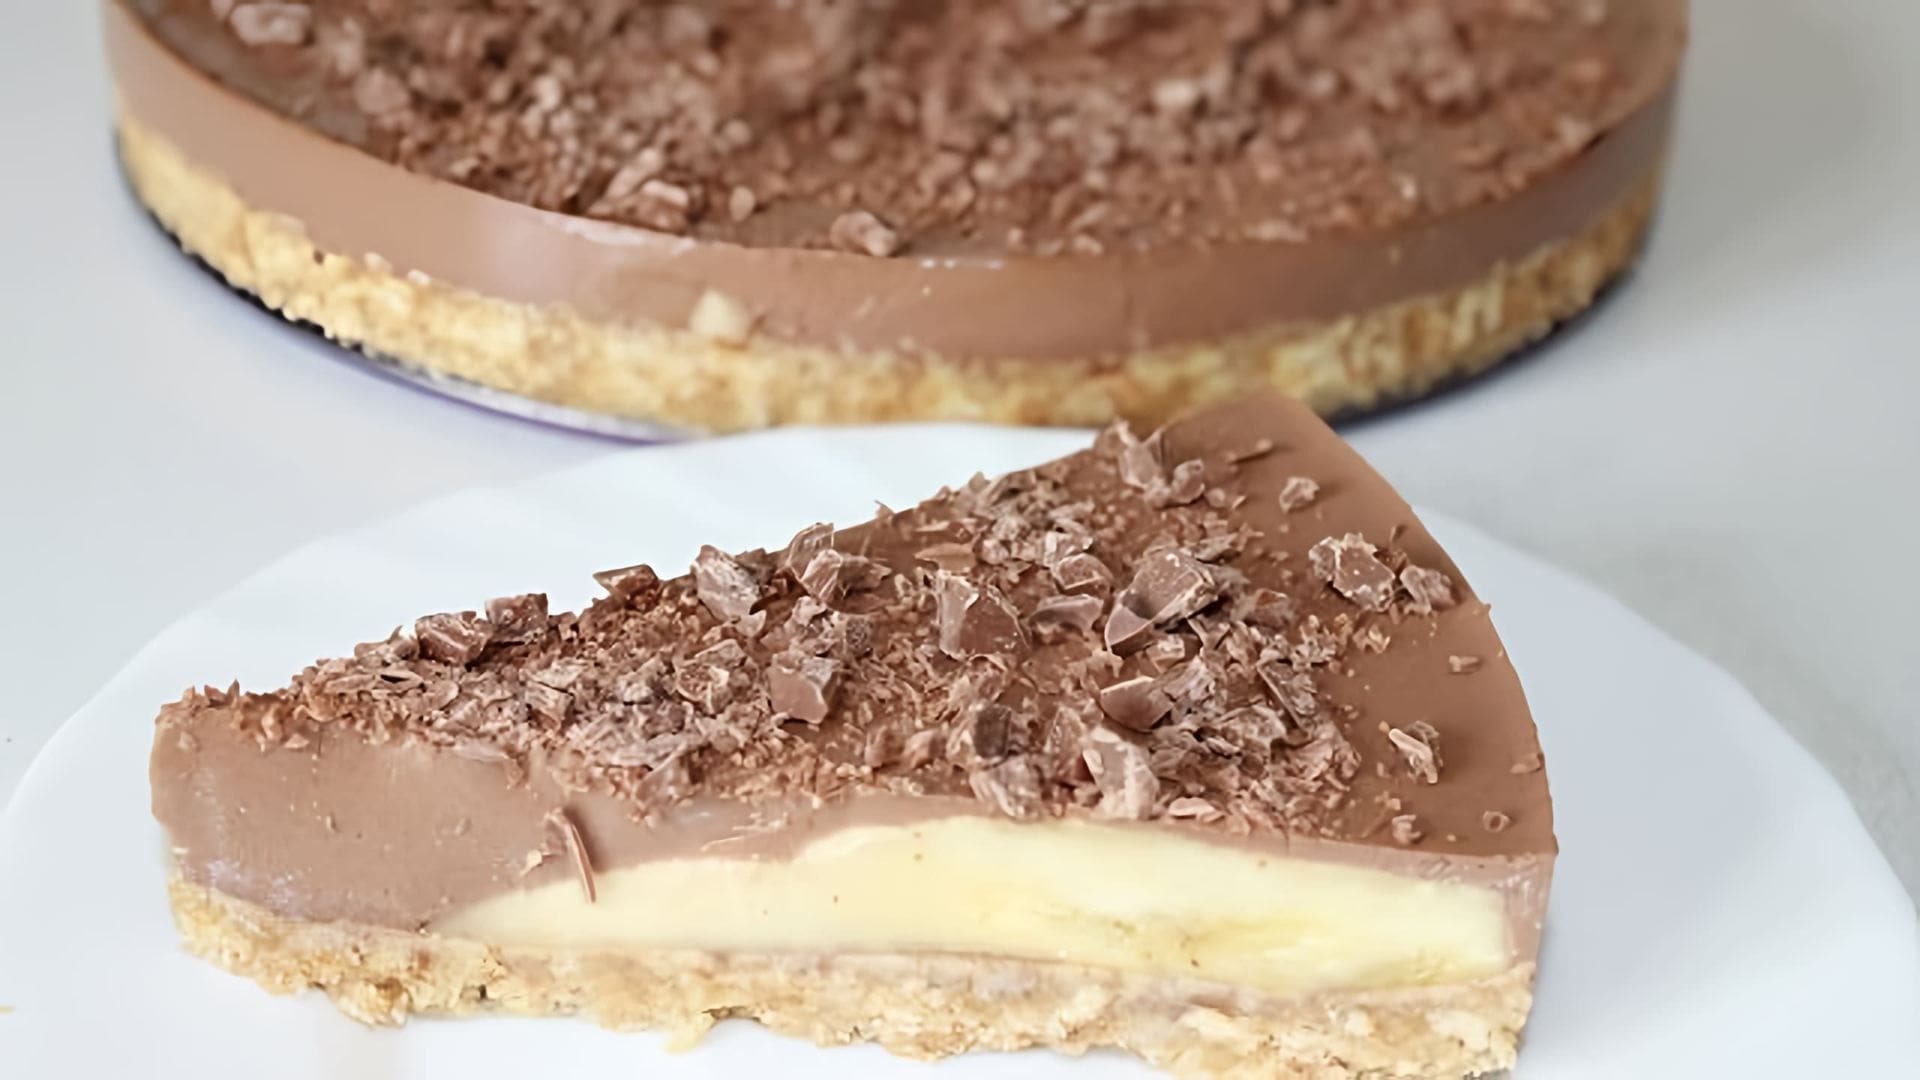 В этом видео демонстрируется рецепт шоколадно-бананового торта без выпечки, который можно приготовить всего за 15 минут